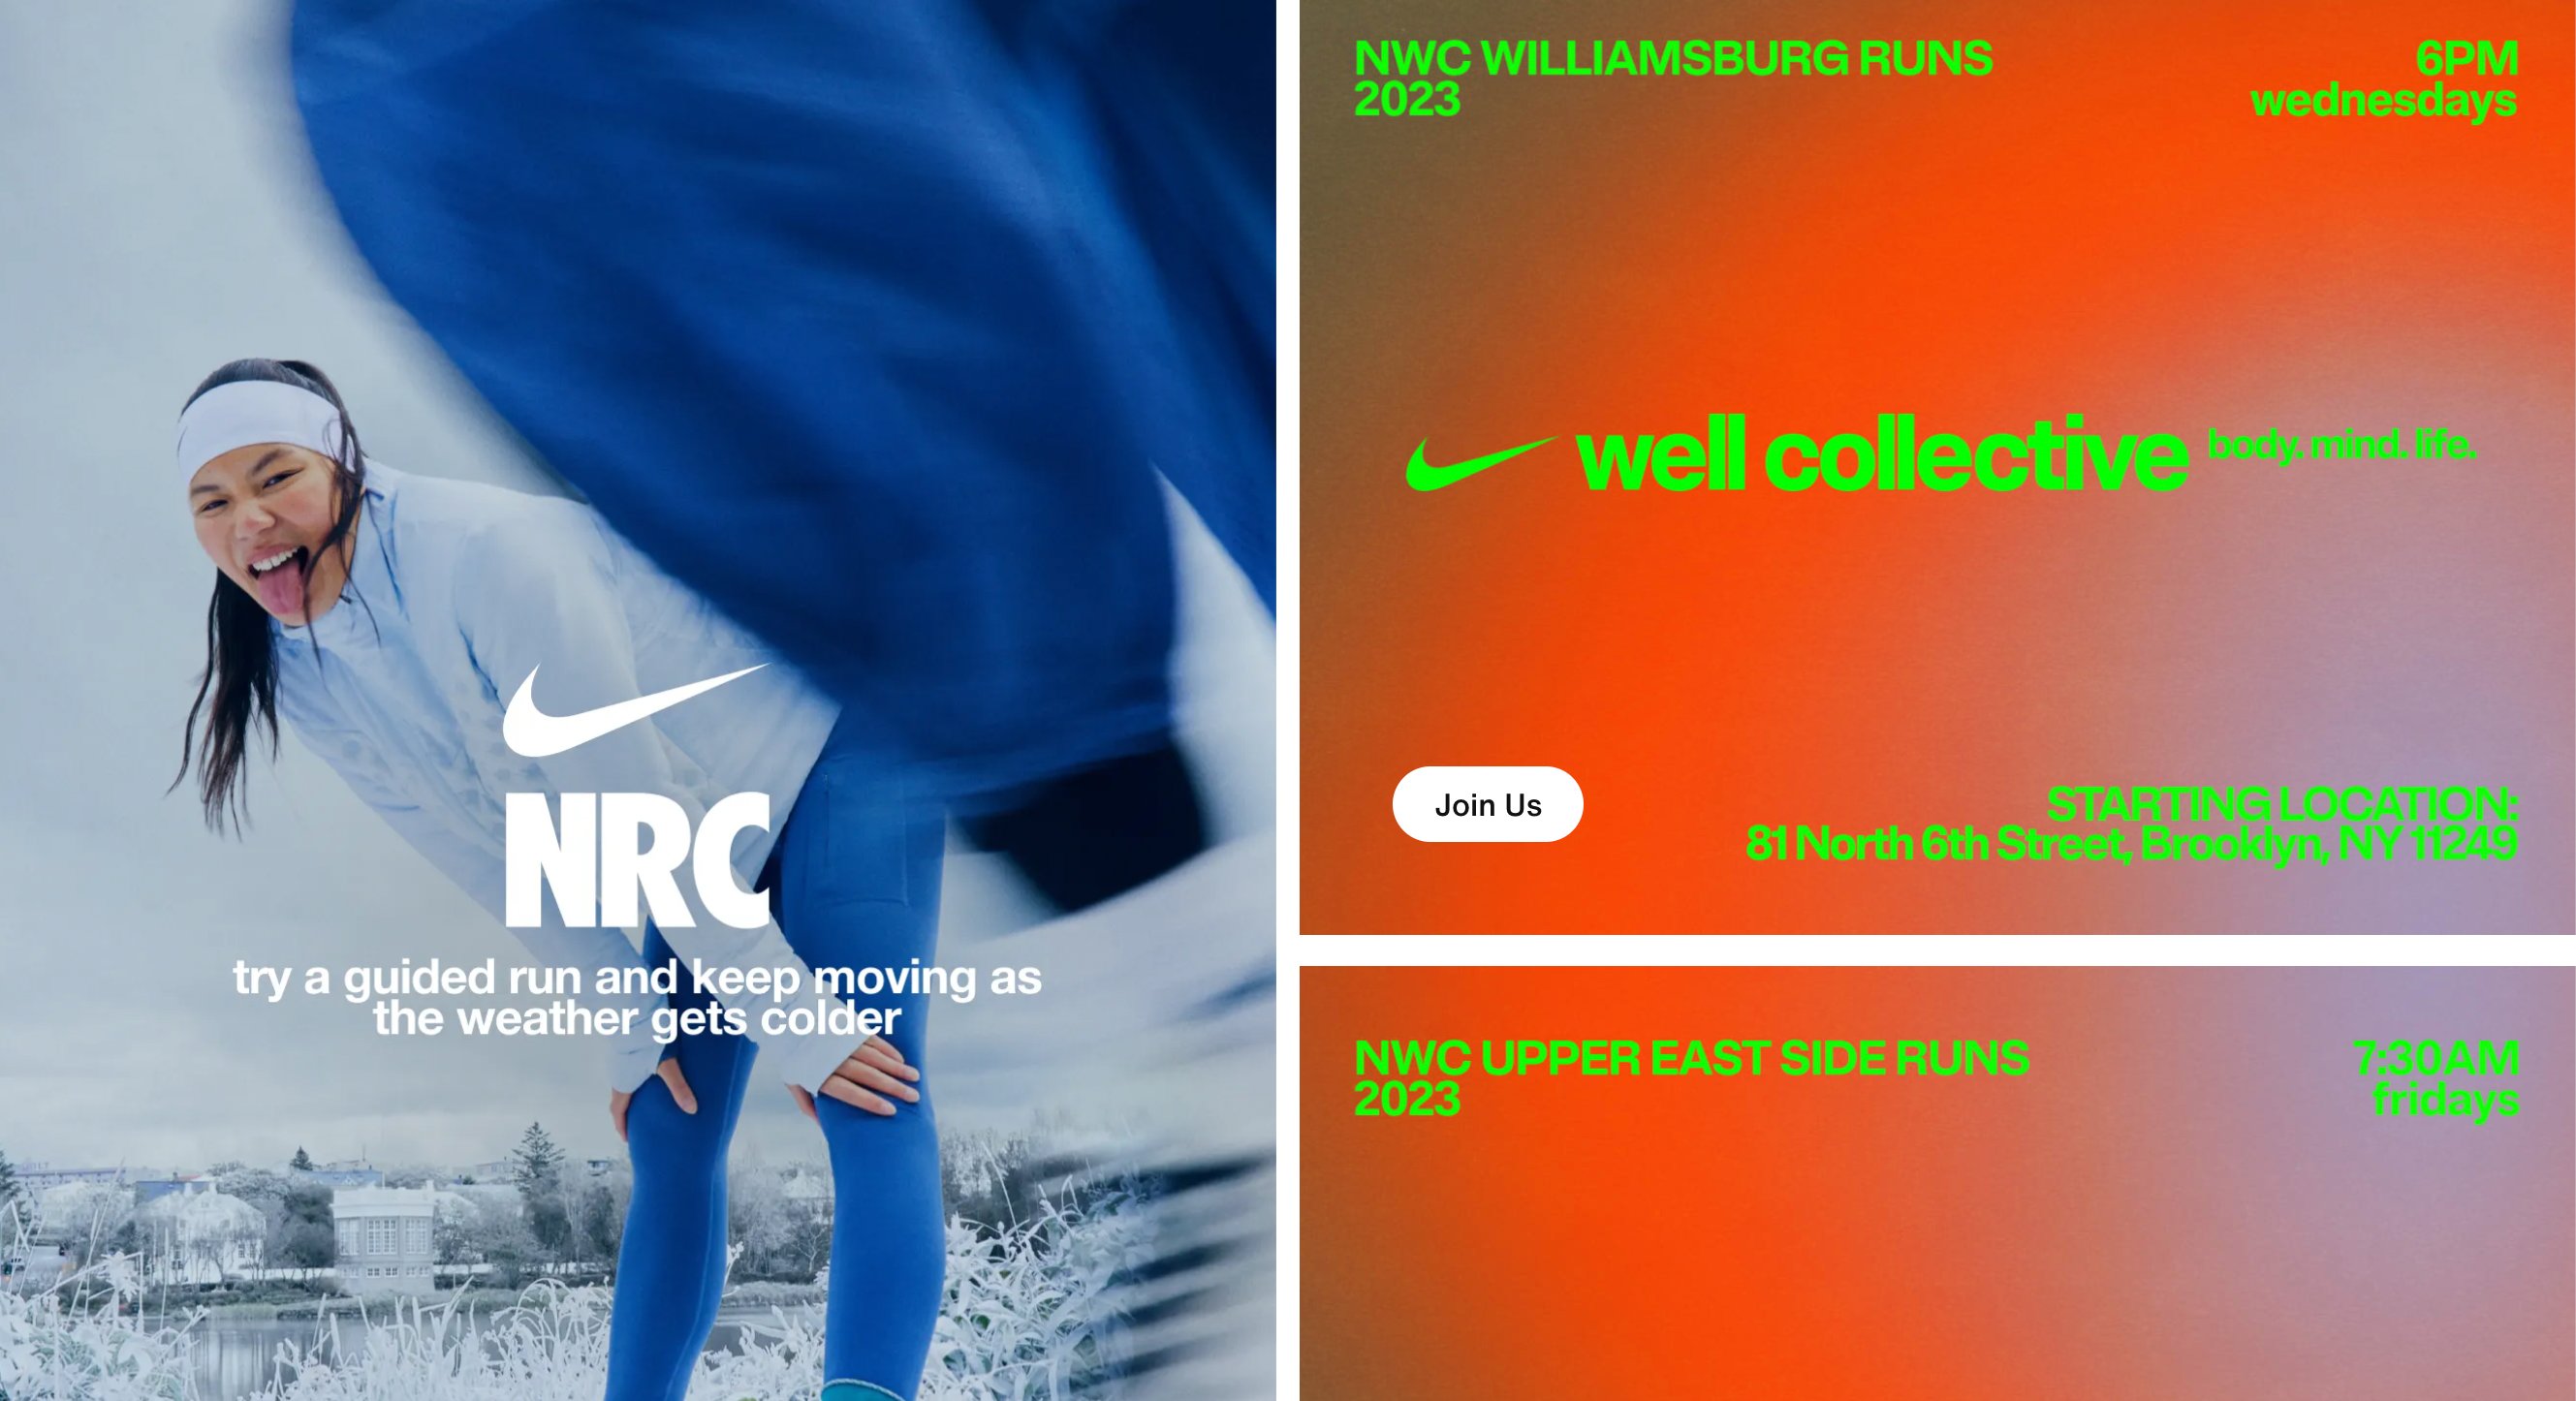 Nike Landing Page